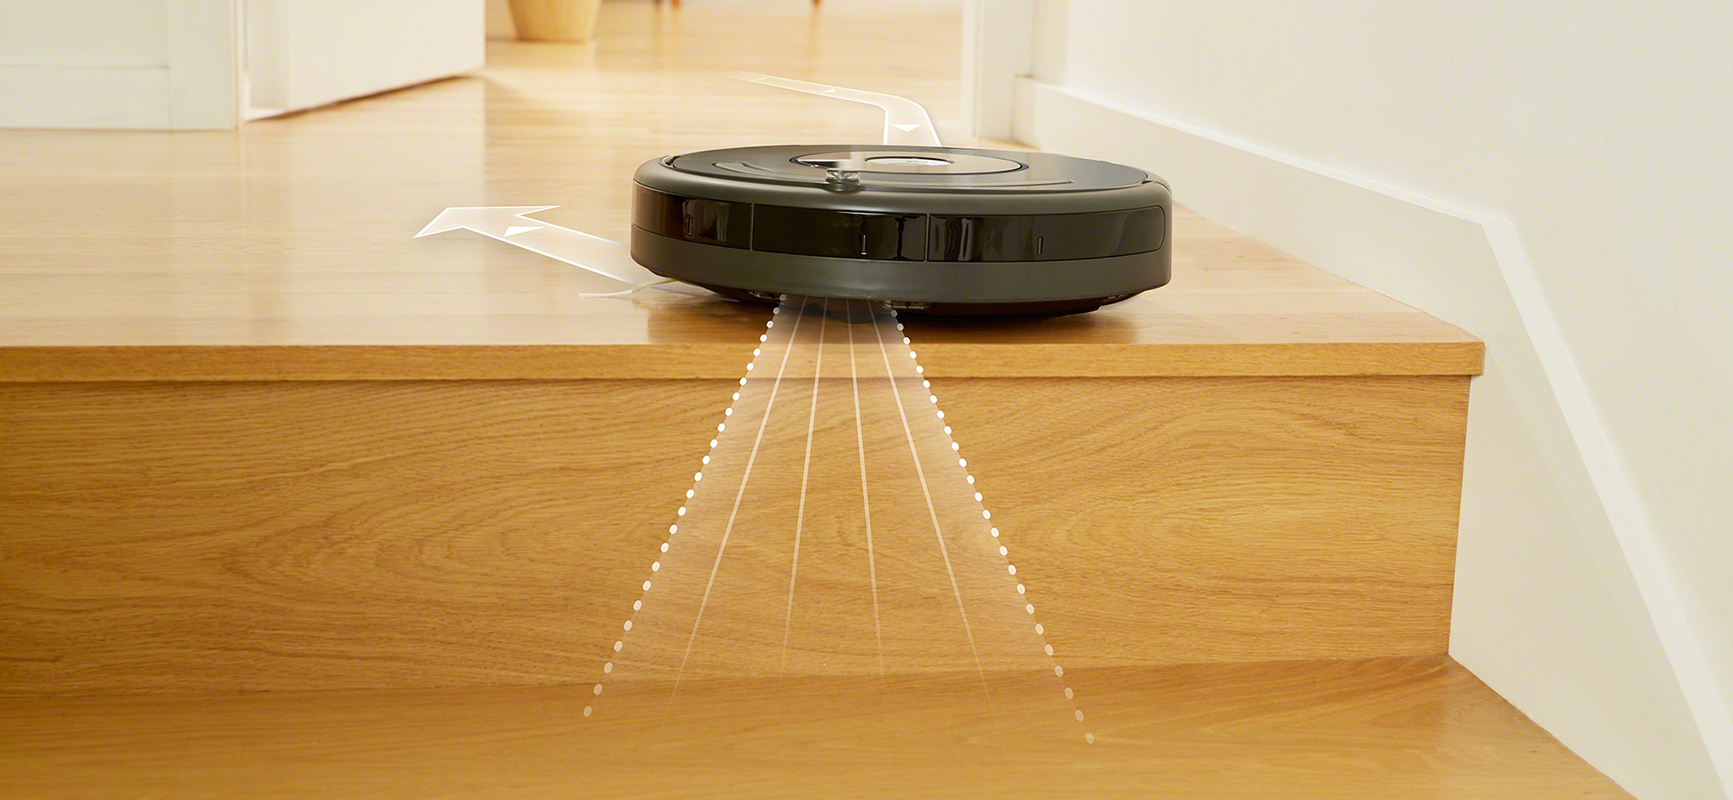 iRobot Roomba i7 on the floor